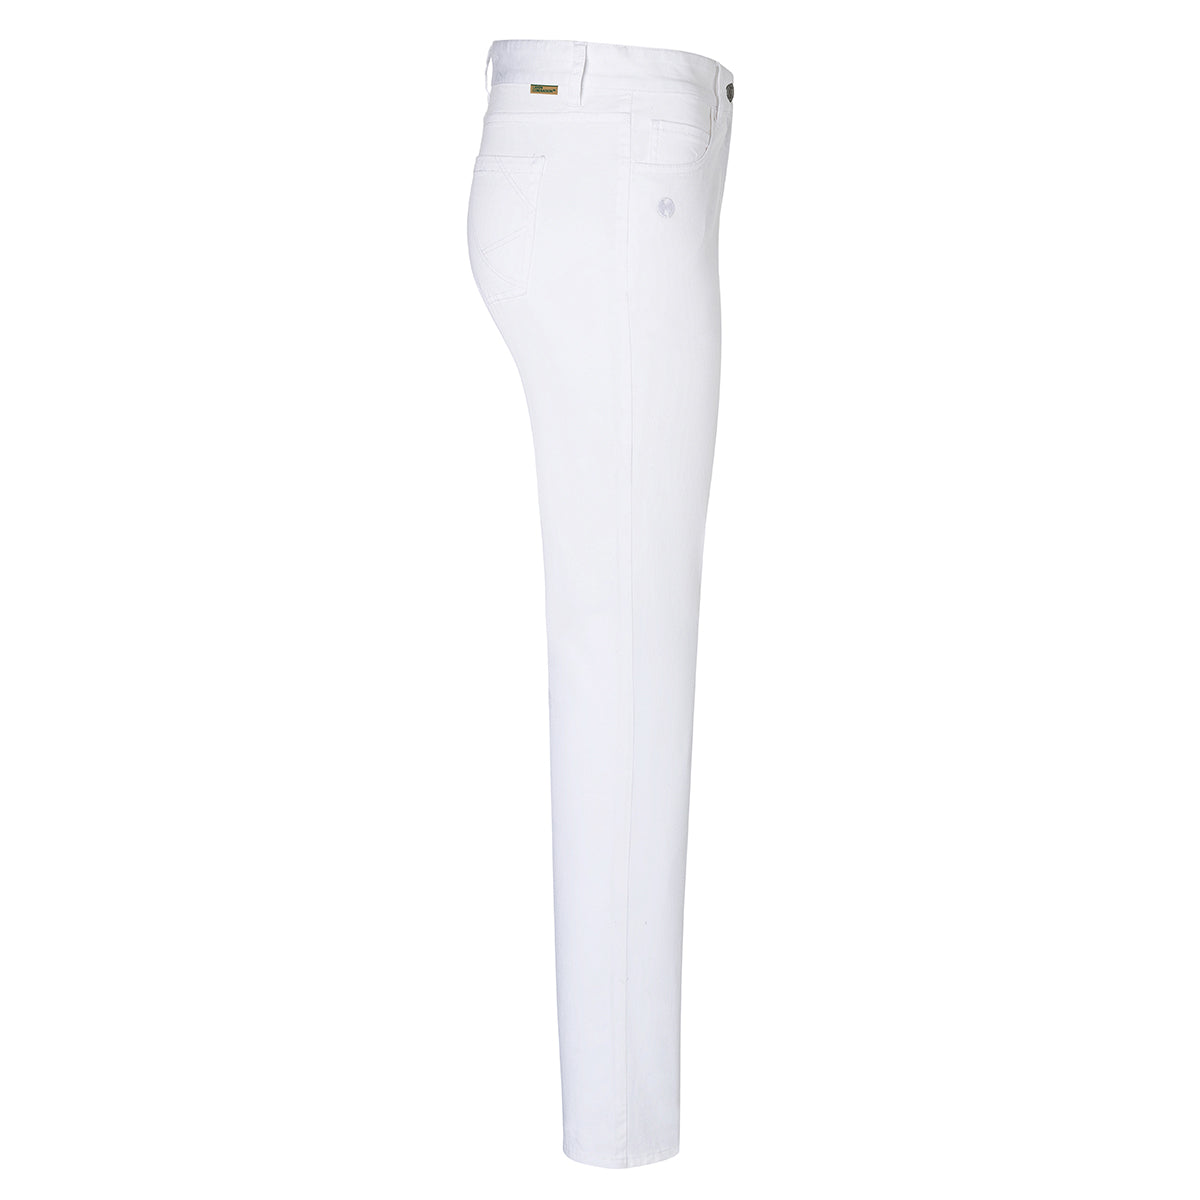 Karlowsky - 5-lomme bukser til damer - Hvid - Størrelse: 52